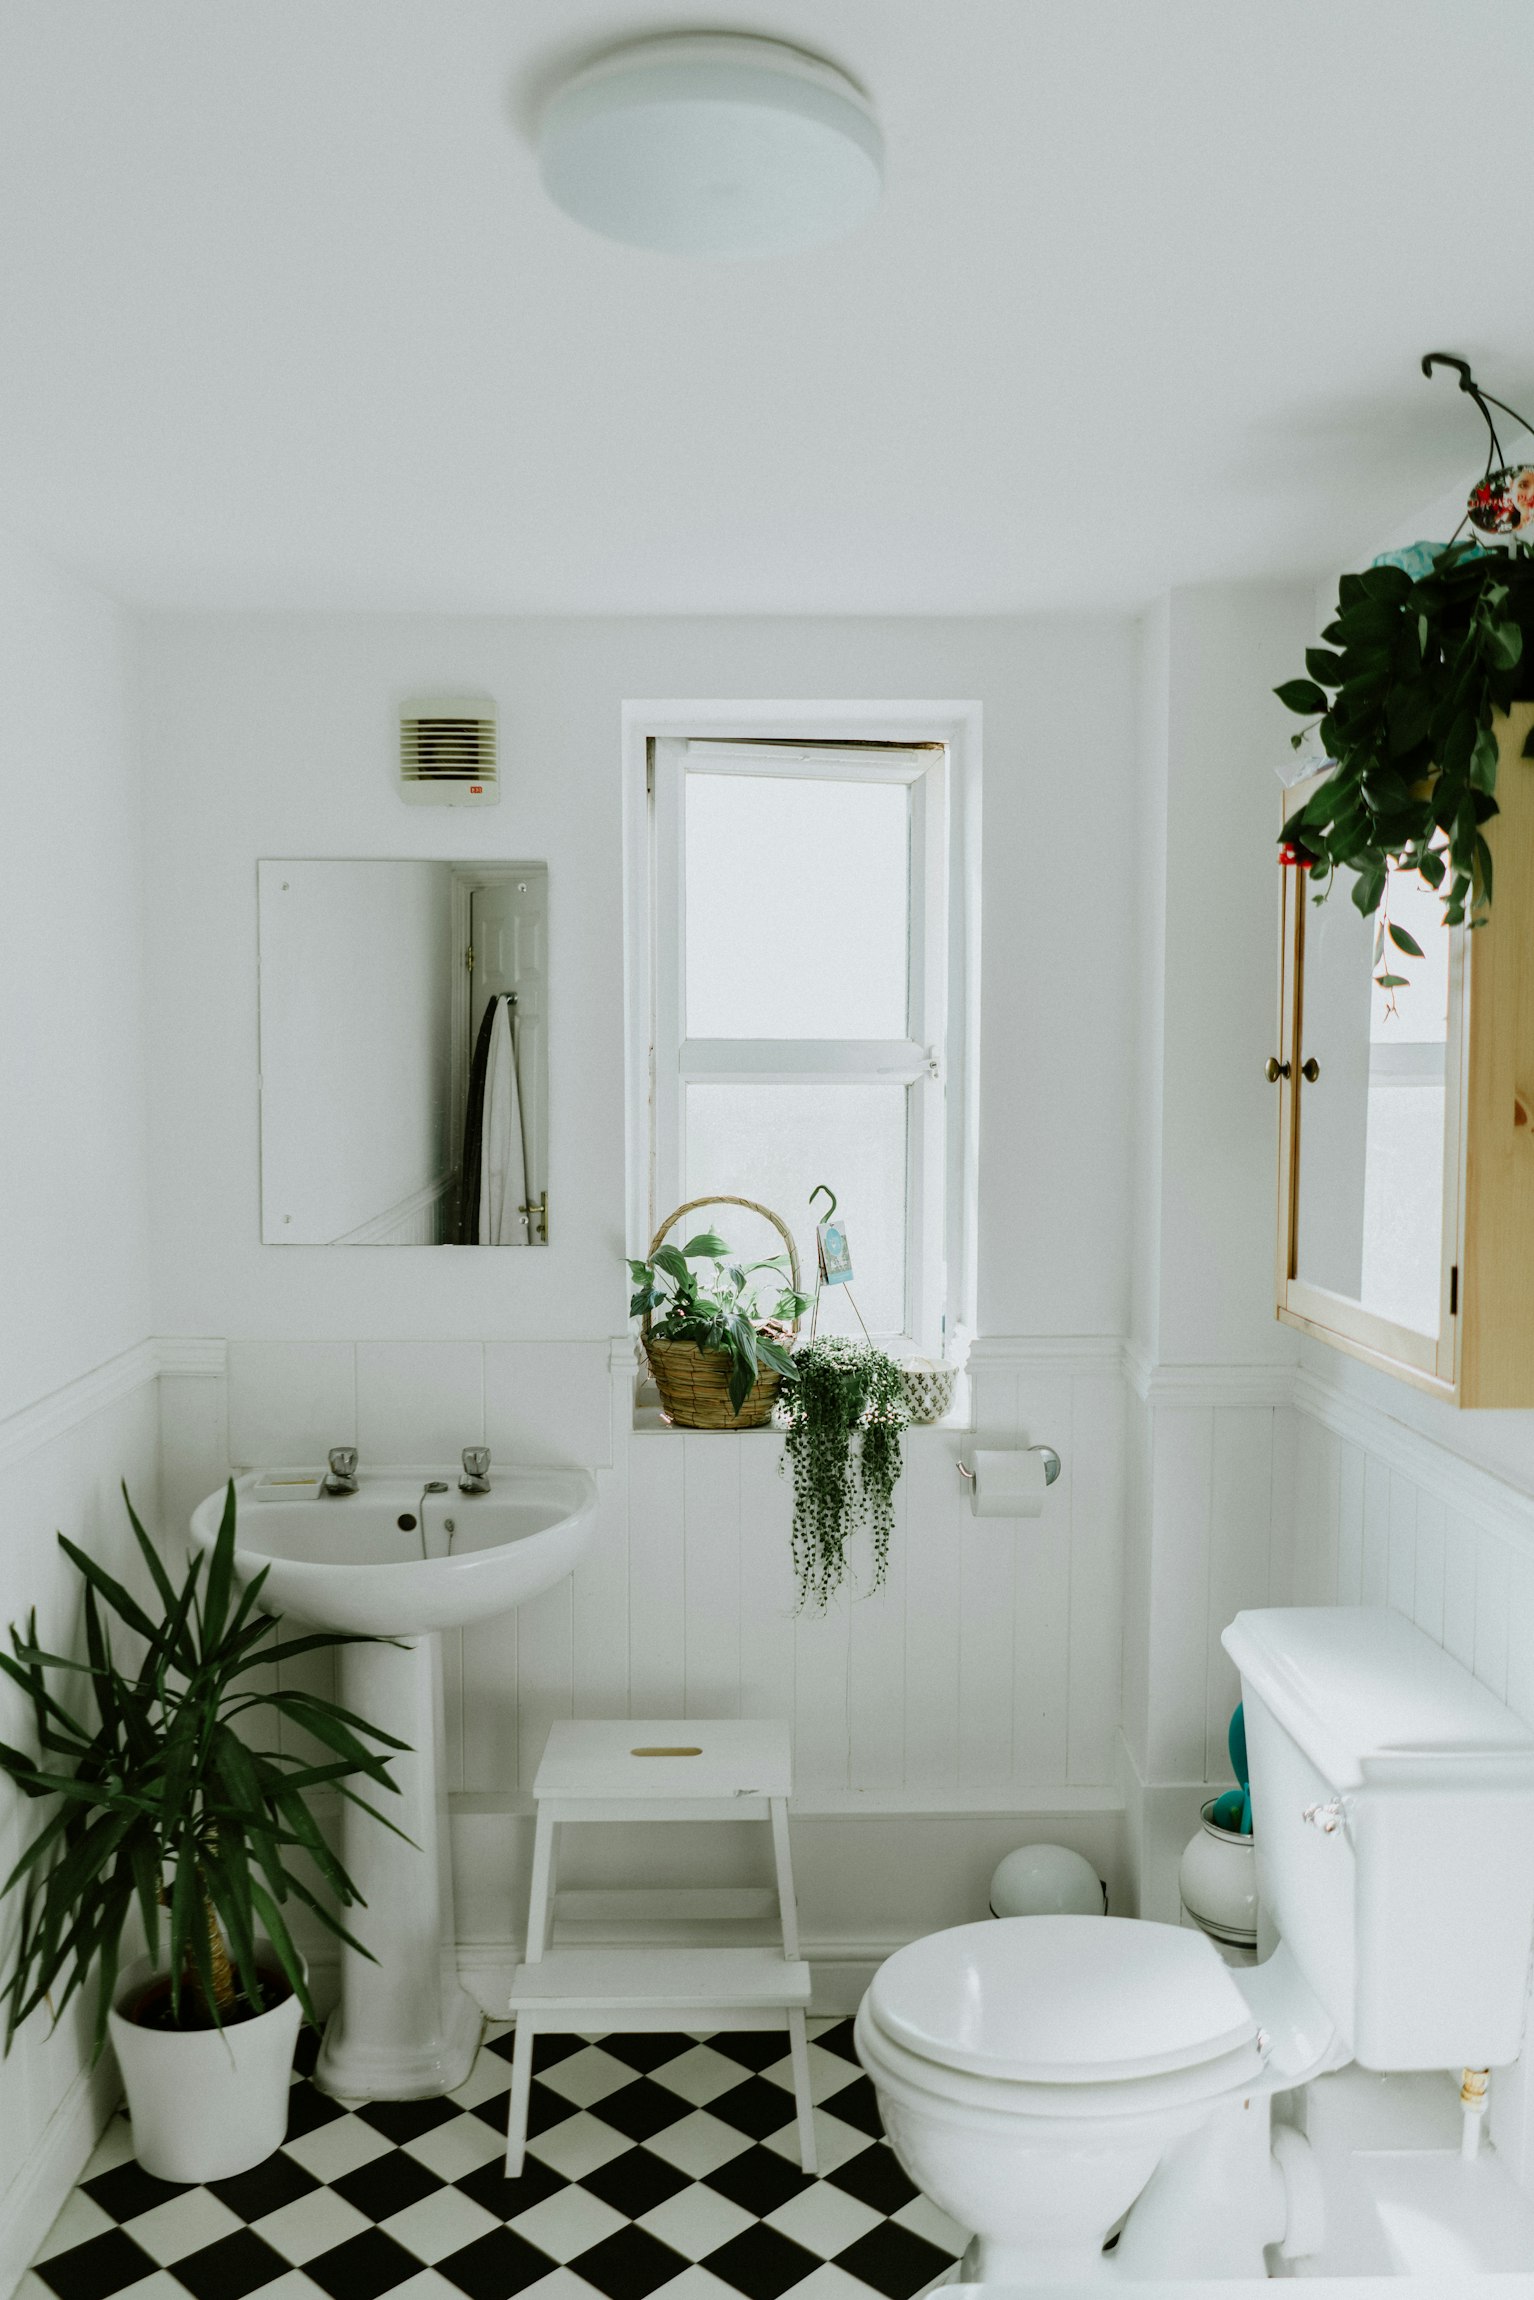 Casas de banho pequenas: como aproveitar o espaço em 7 passos